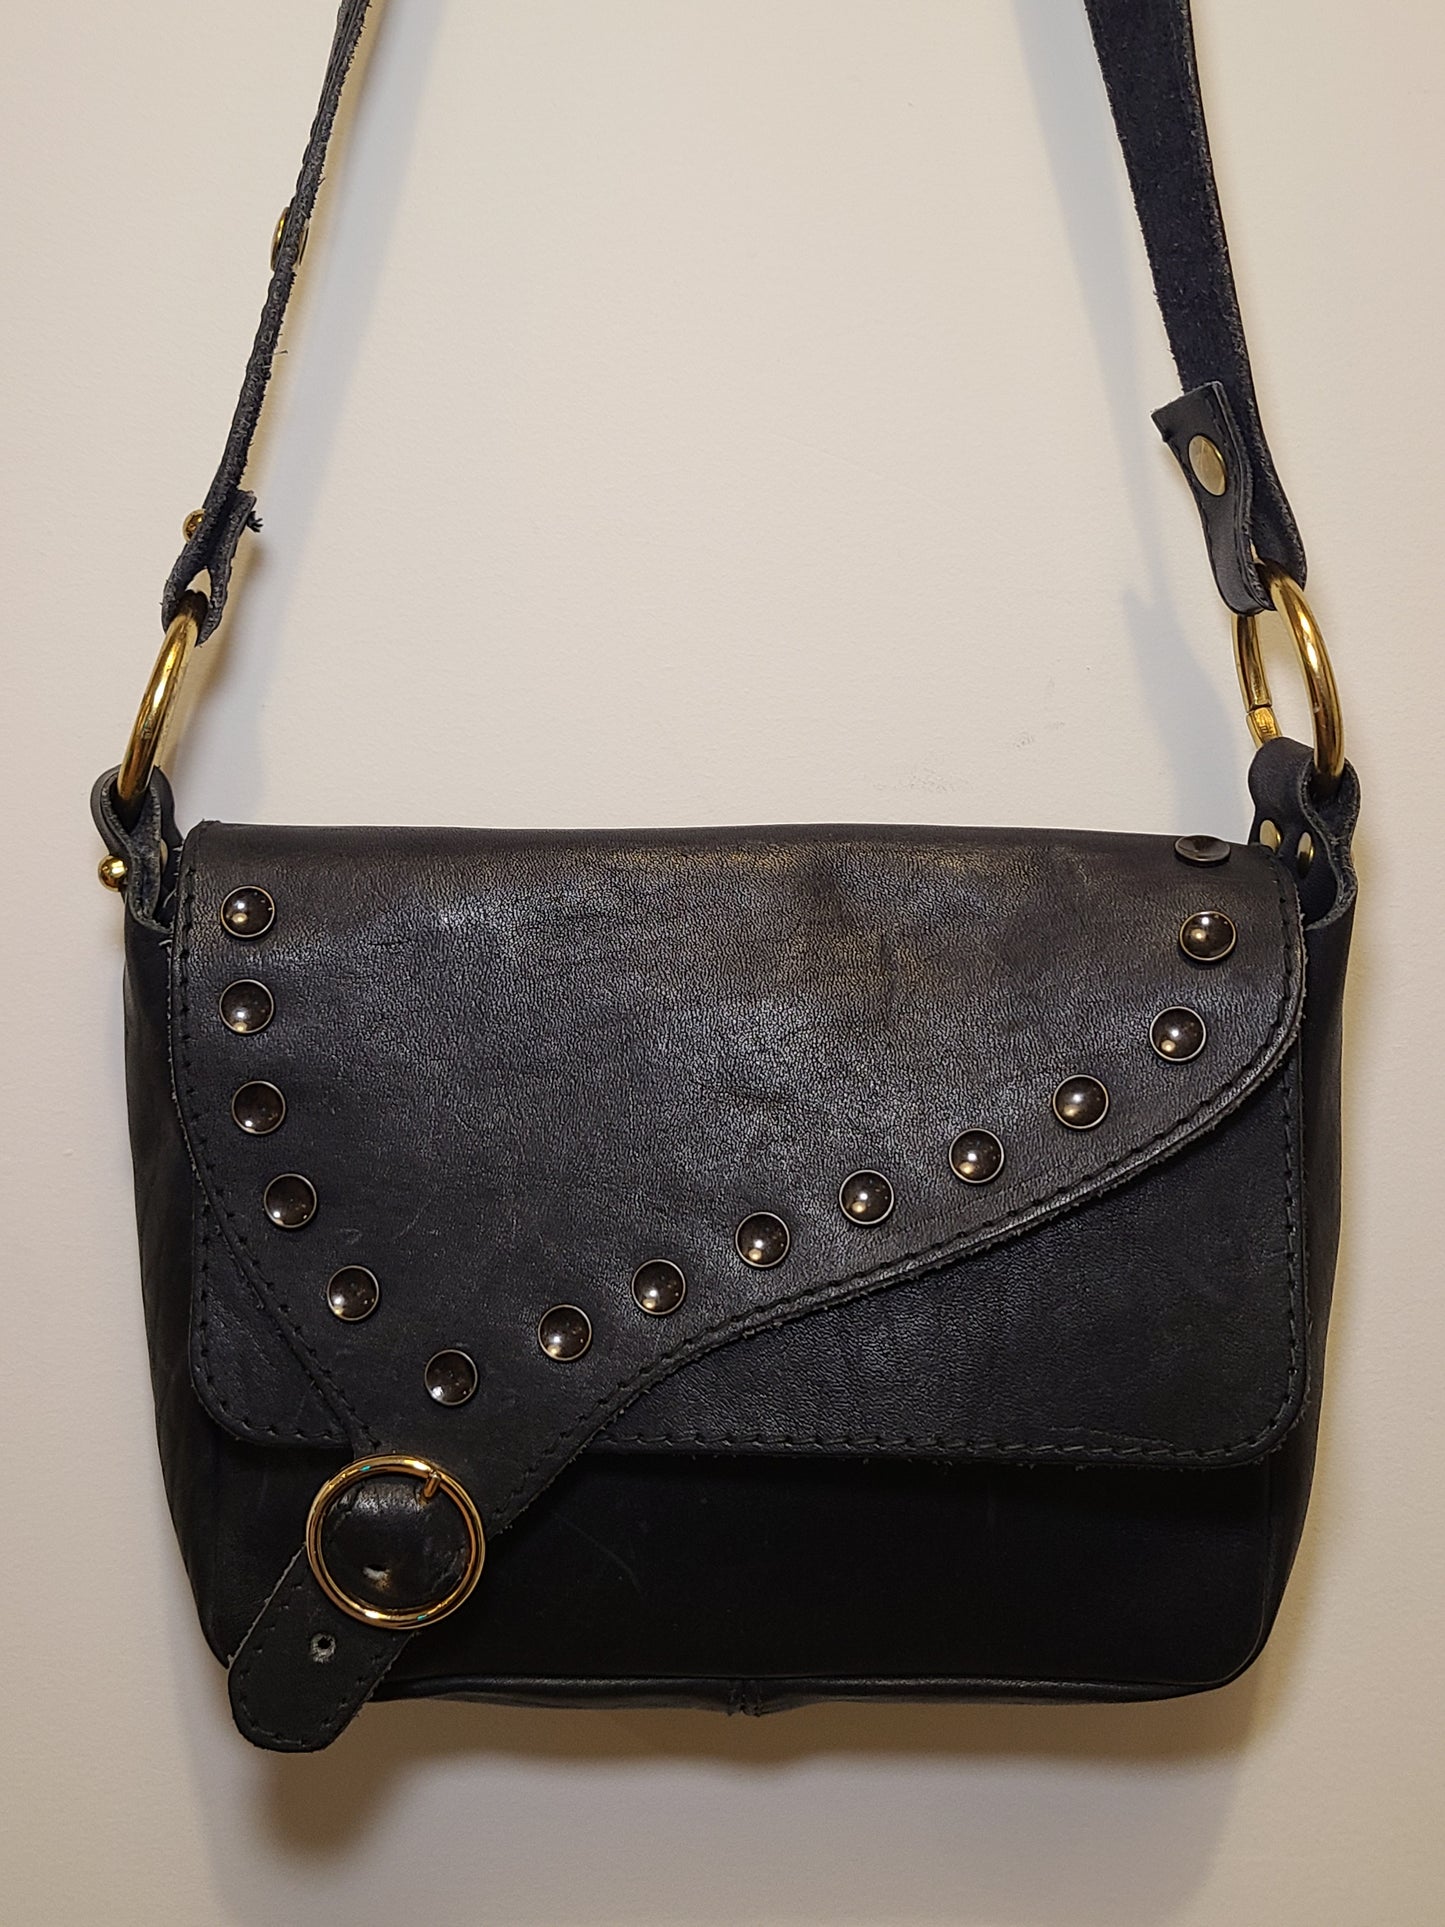 Vintage 1970s Navy Leather Shoulder Bag Re-Imagined